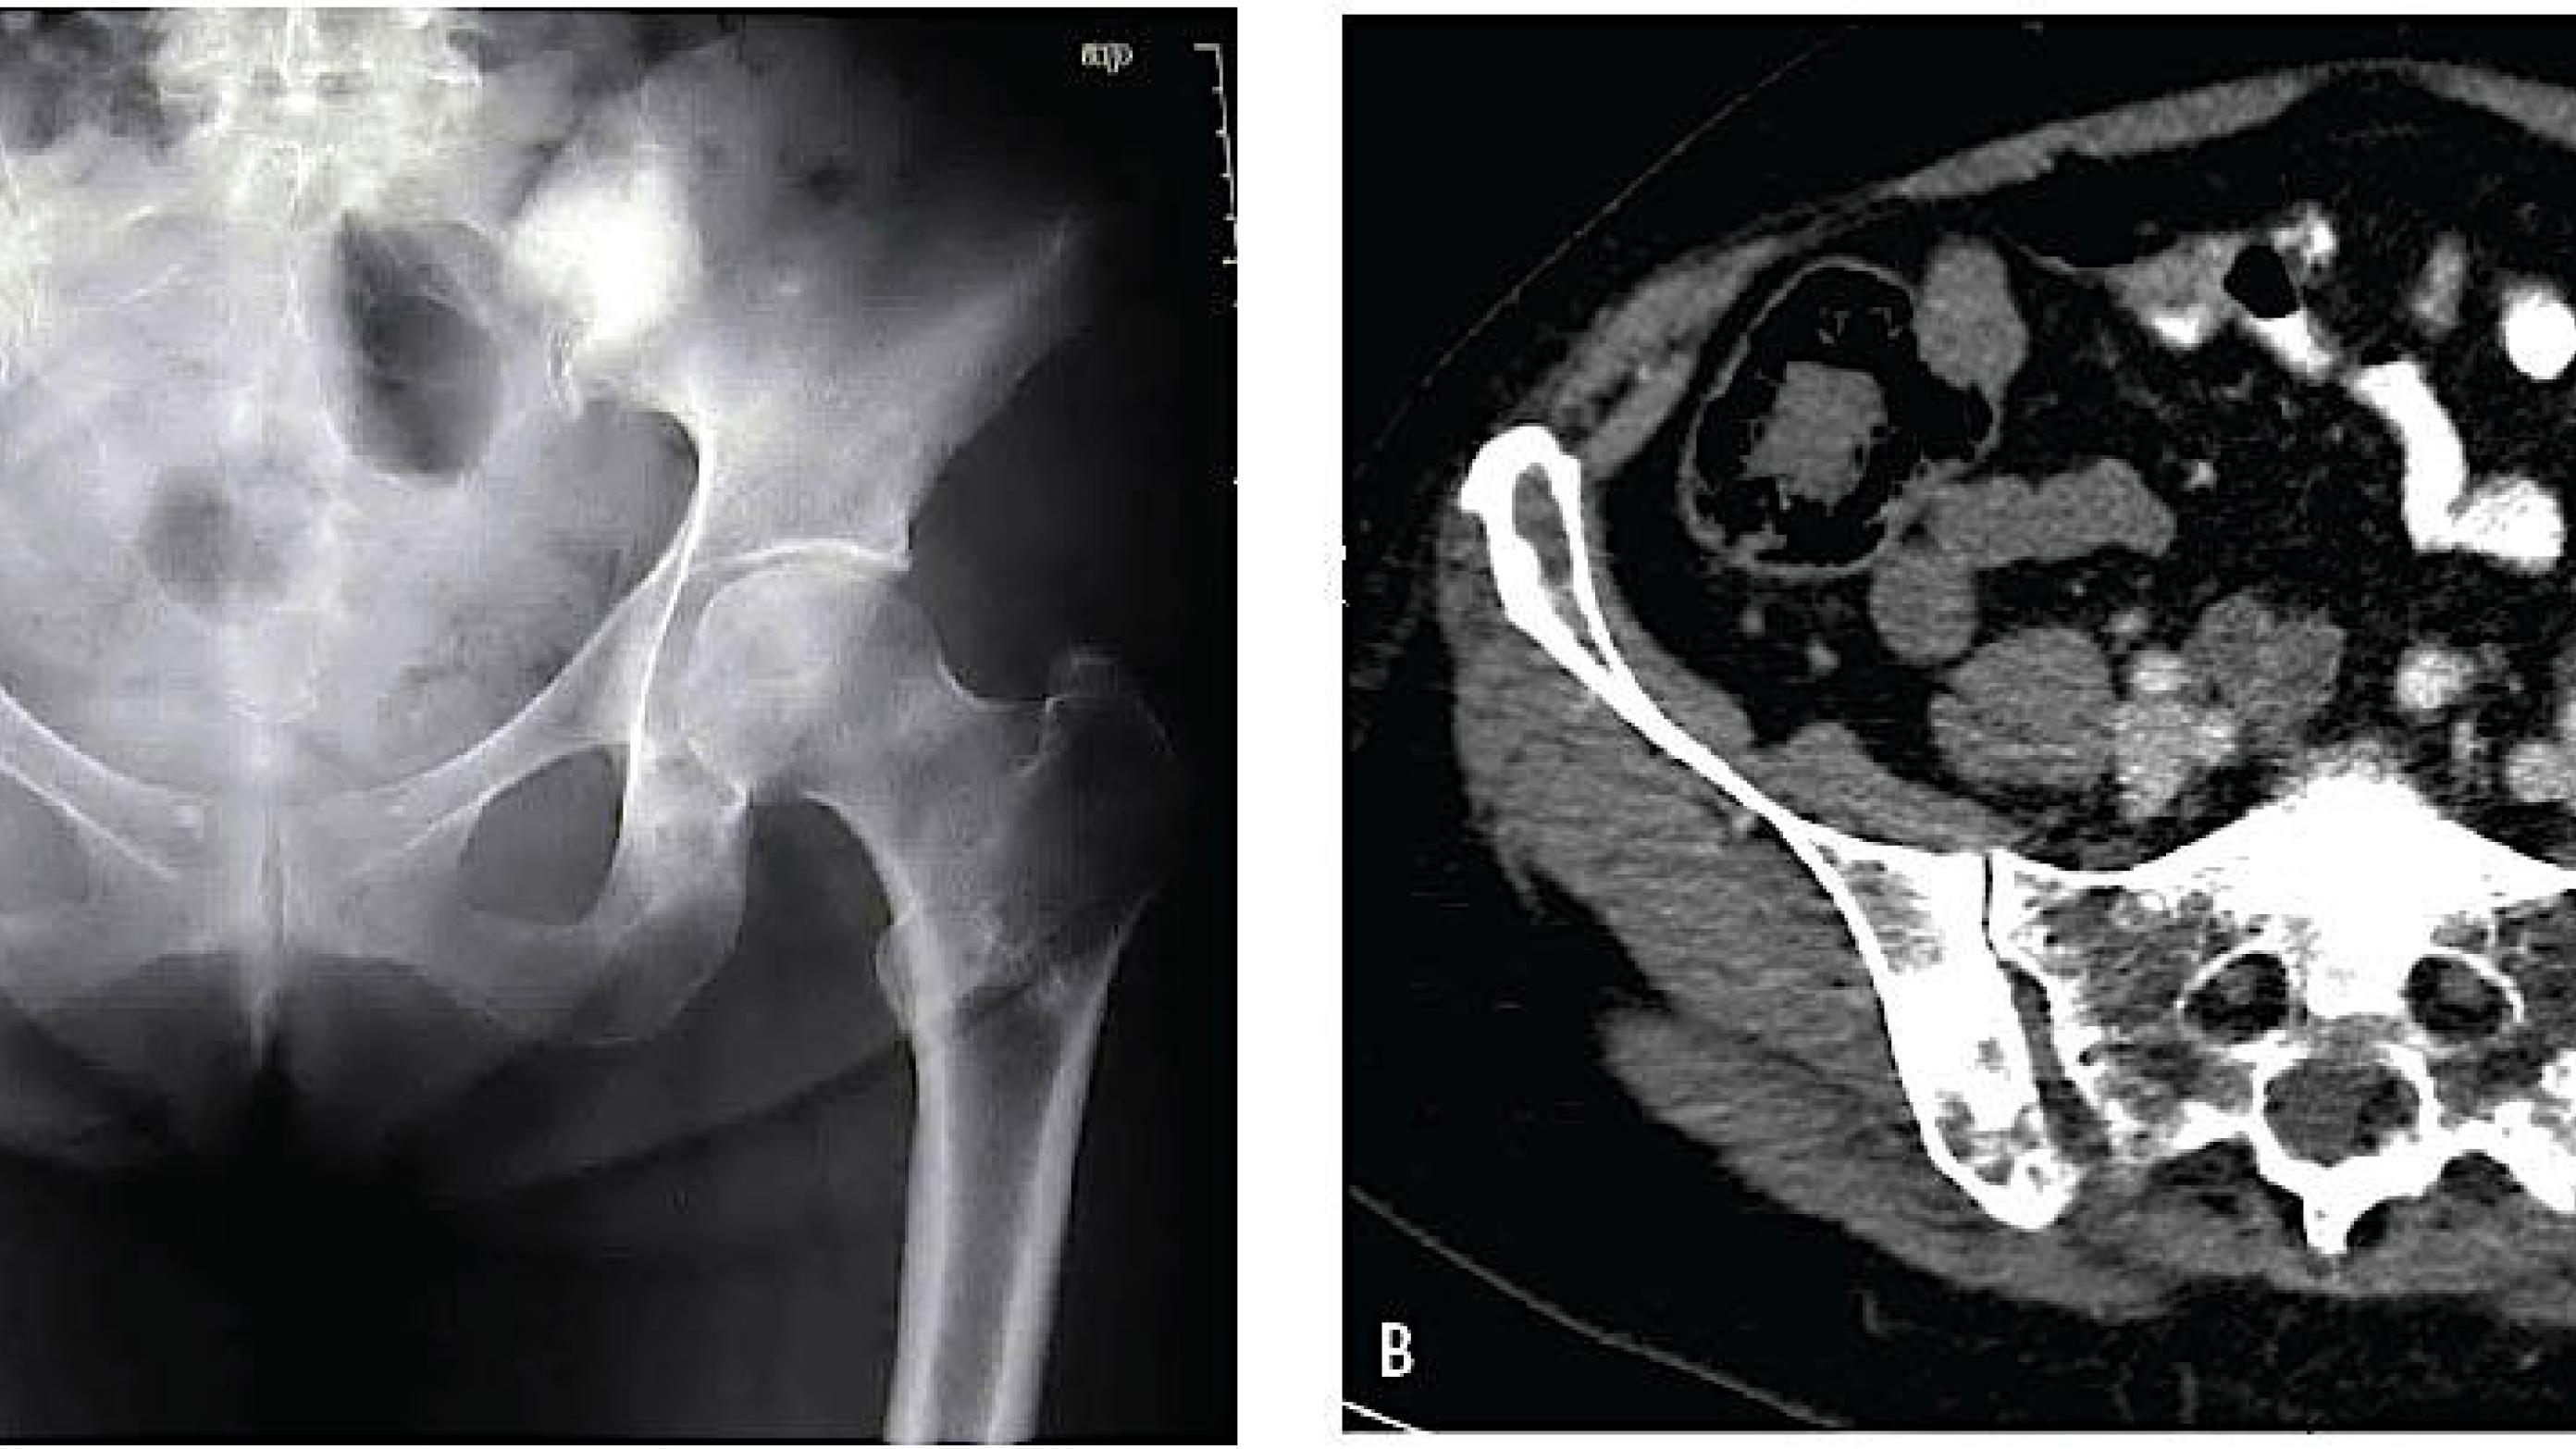 A. Multiple knoglemetastaser i pelvis og højre femur hos en patient med brystkræft. B. CT. Der ses komplicerende knoglemetastaser i os sacrum og pelvis hos en patient med brystkræft.